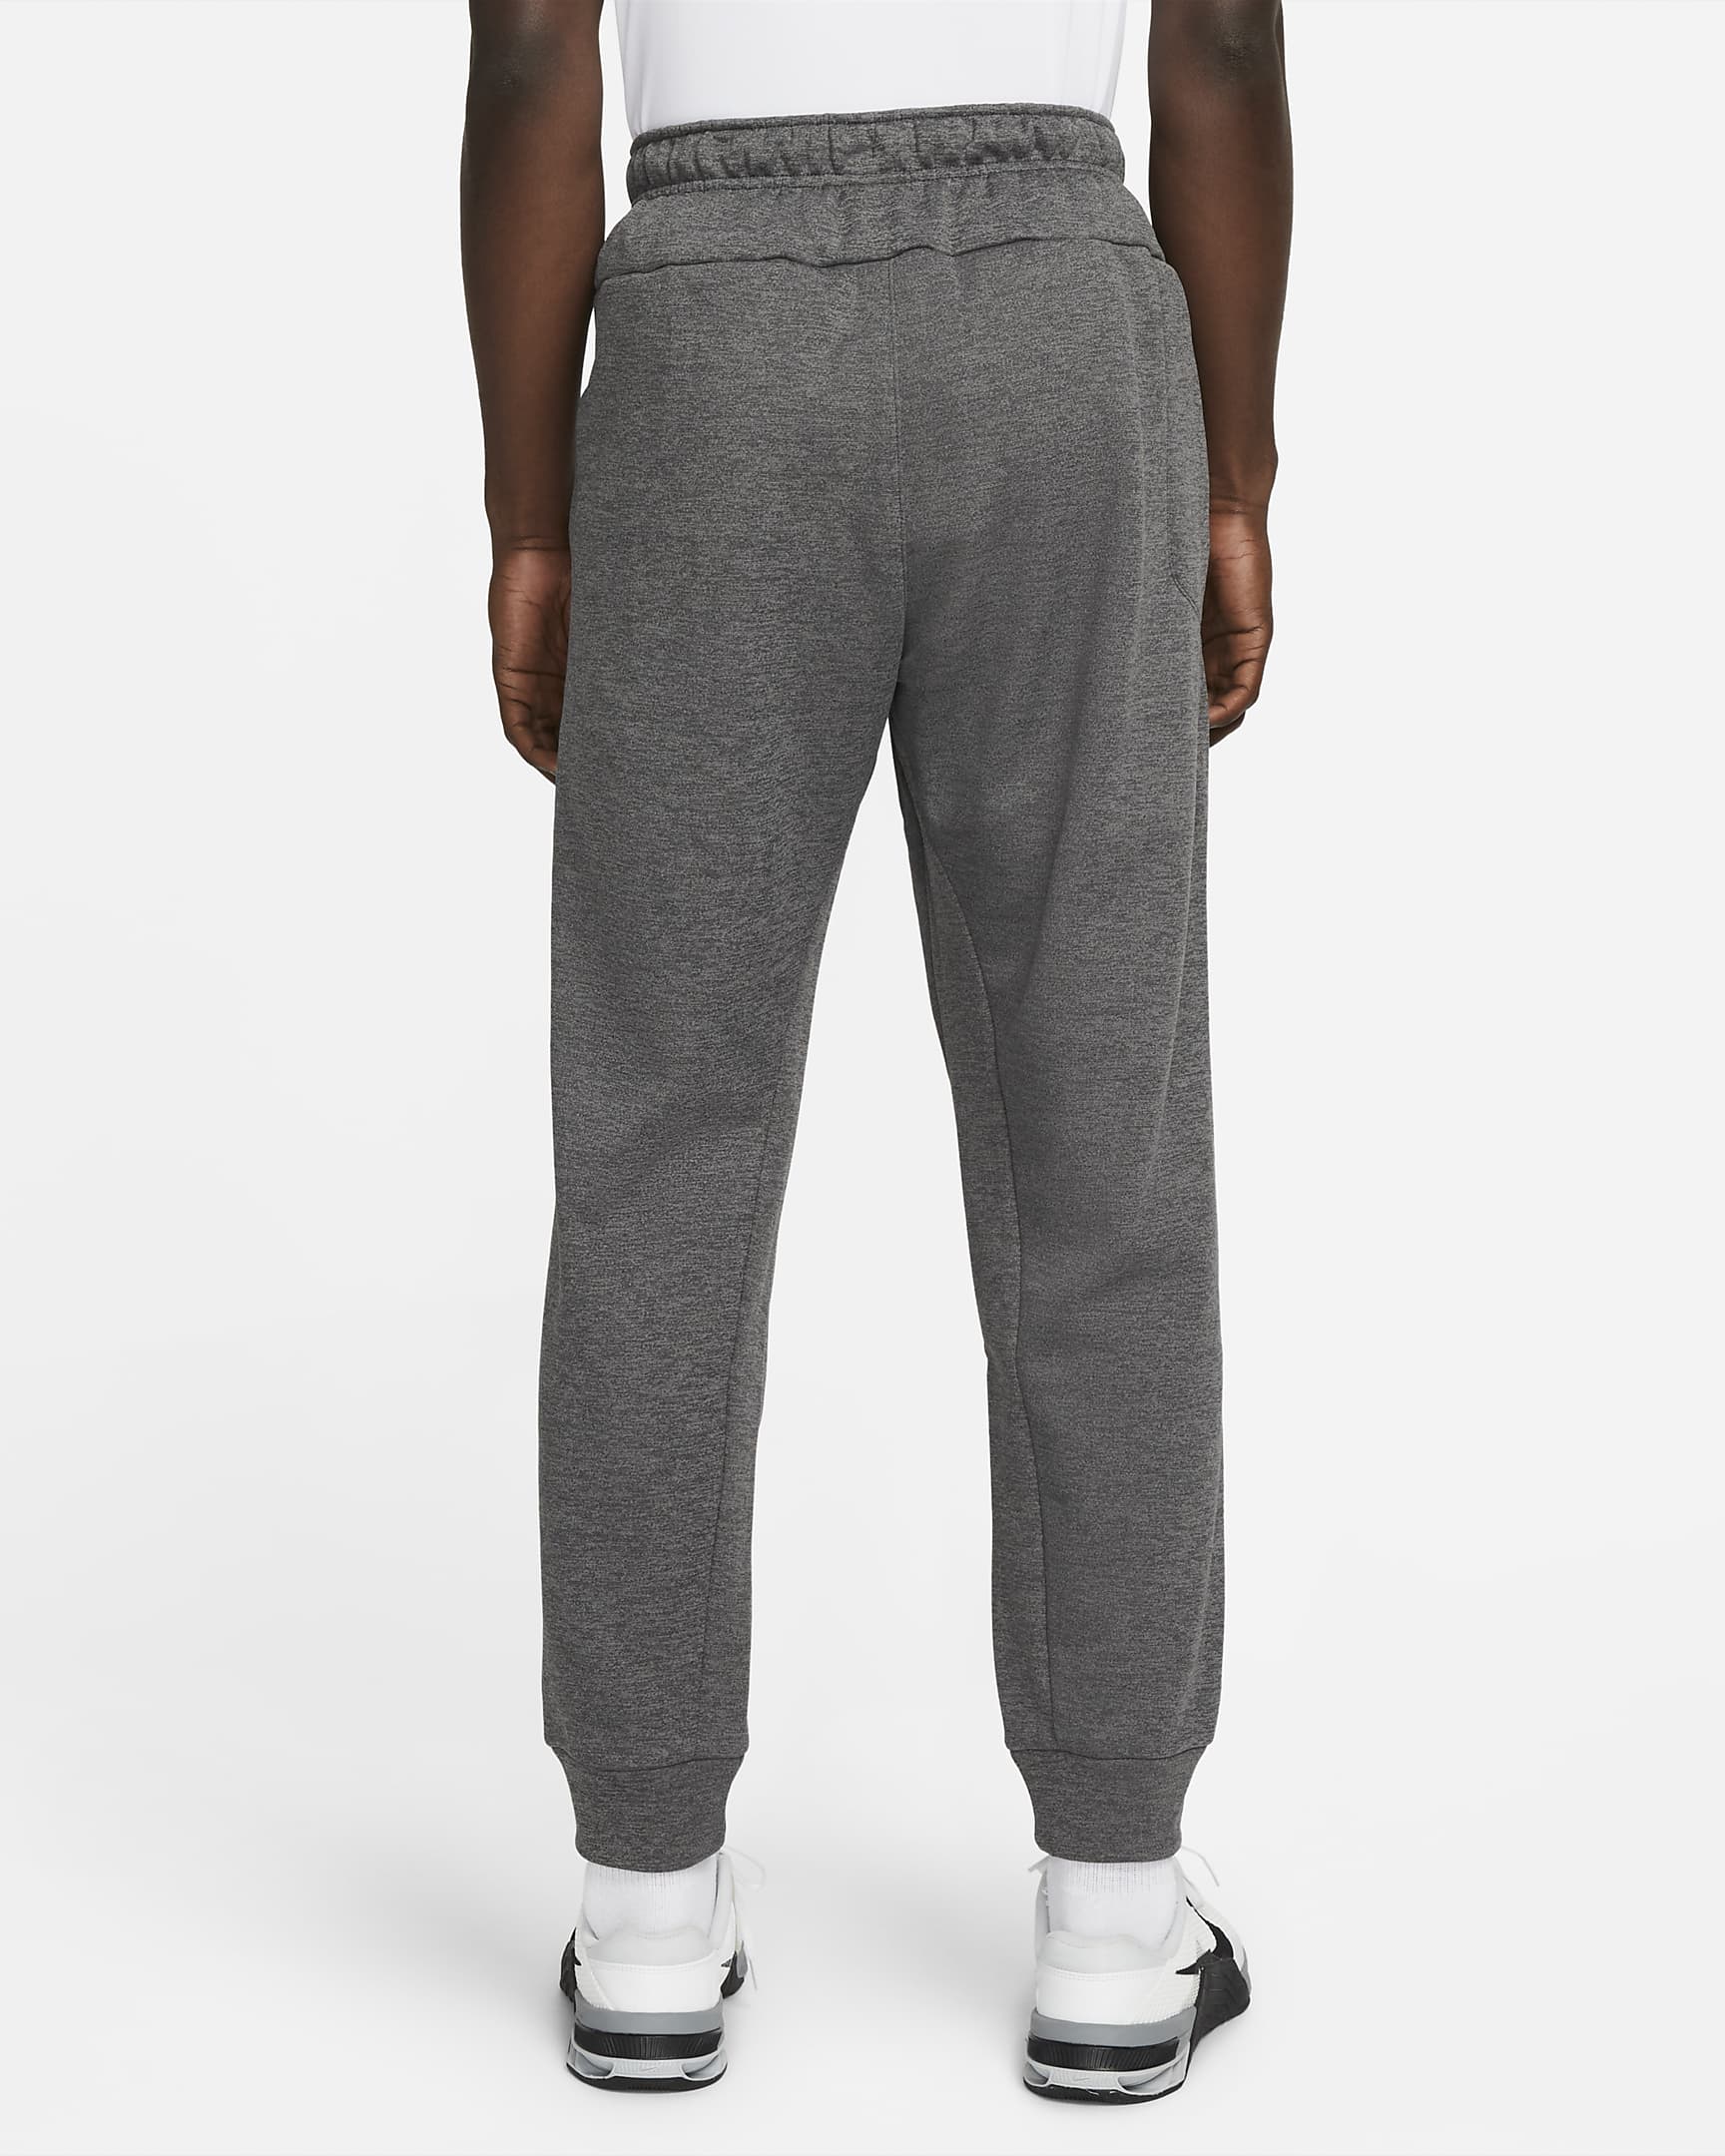 Nike Therma Pants - Gray